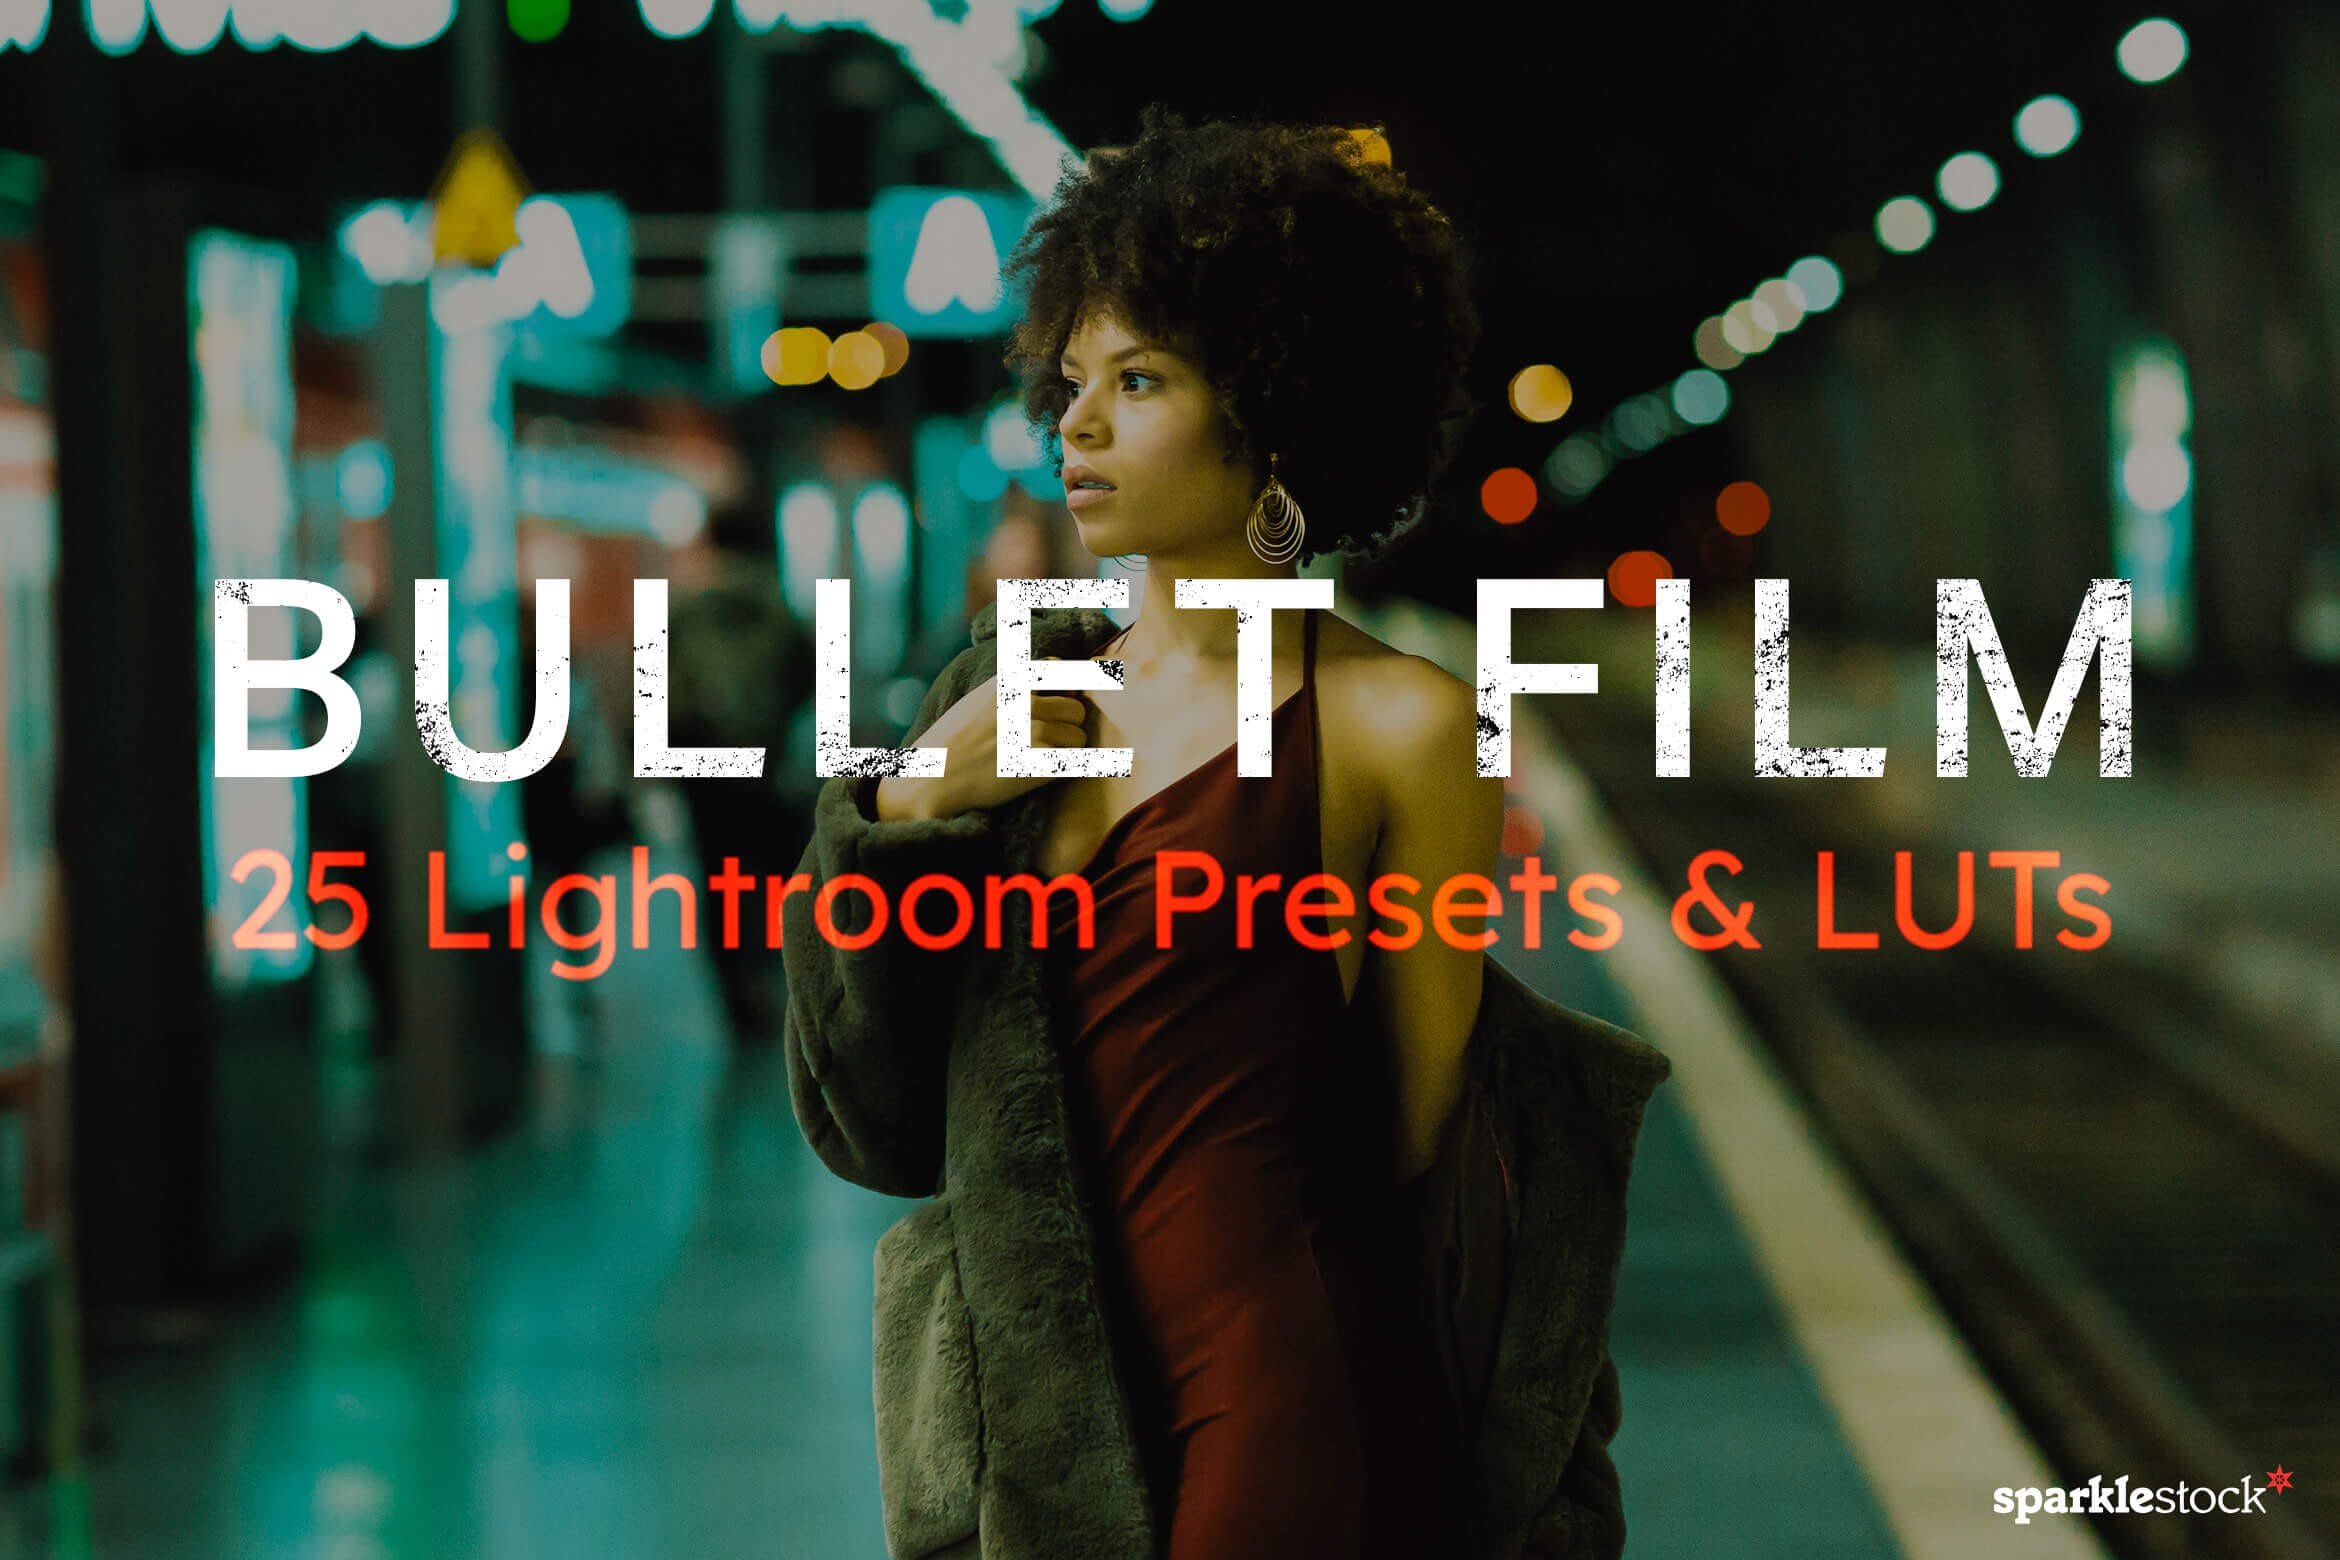 25 Bullet Film Lightroom Presets and LUTs